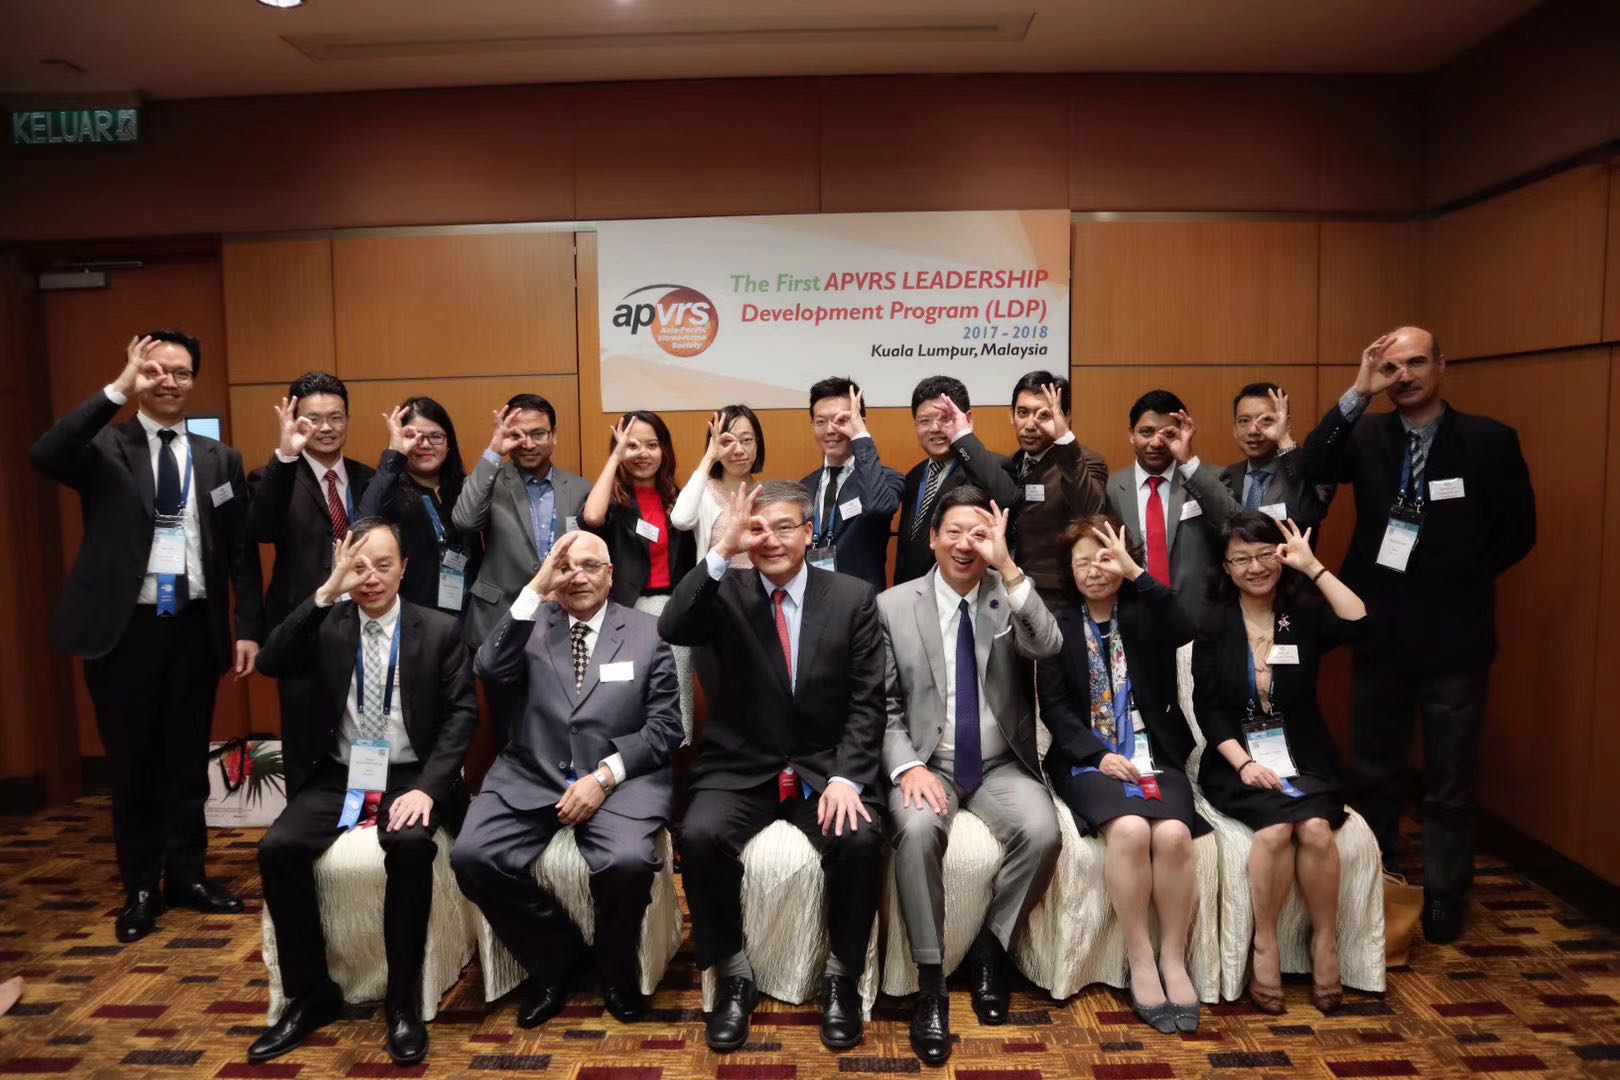 中国眼科专家推动亚太的眼科发展第13届亚太黄斑视网膜学会年会成功在中国举办